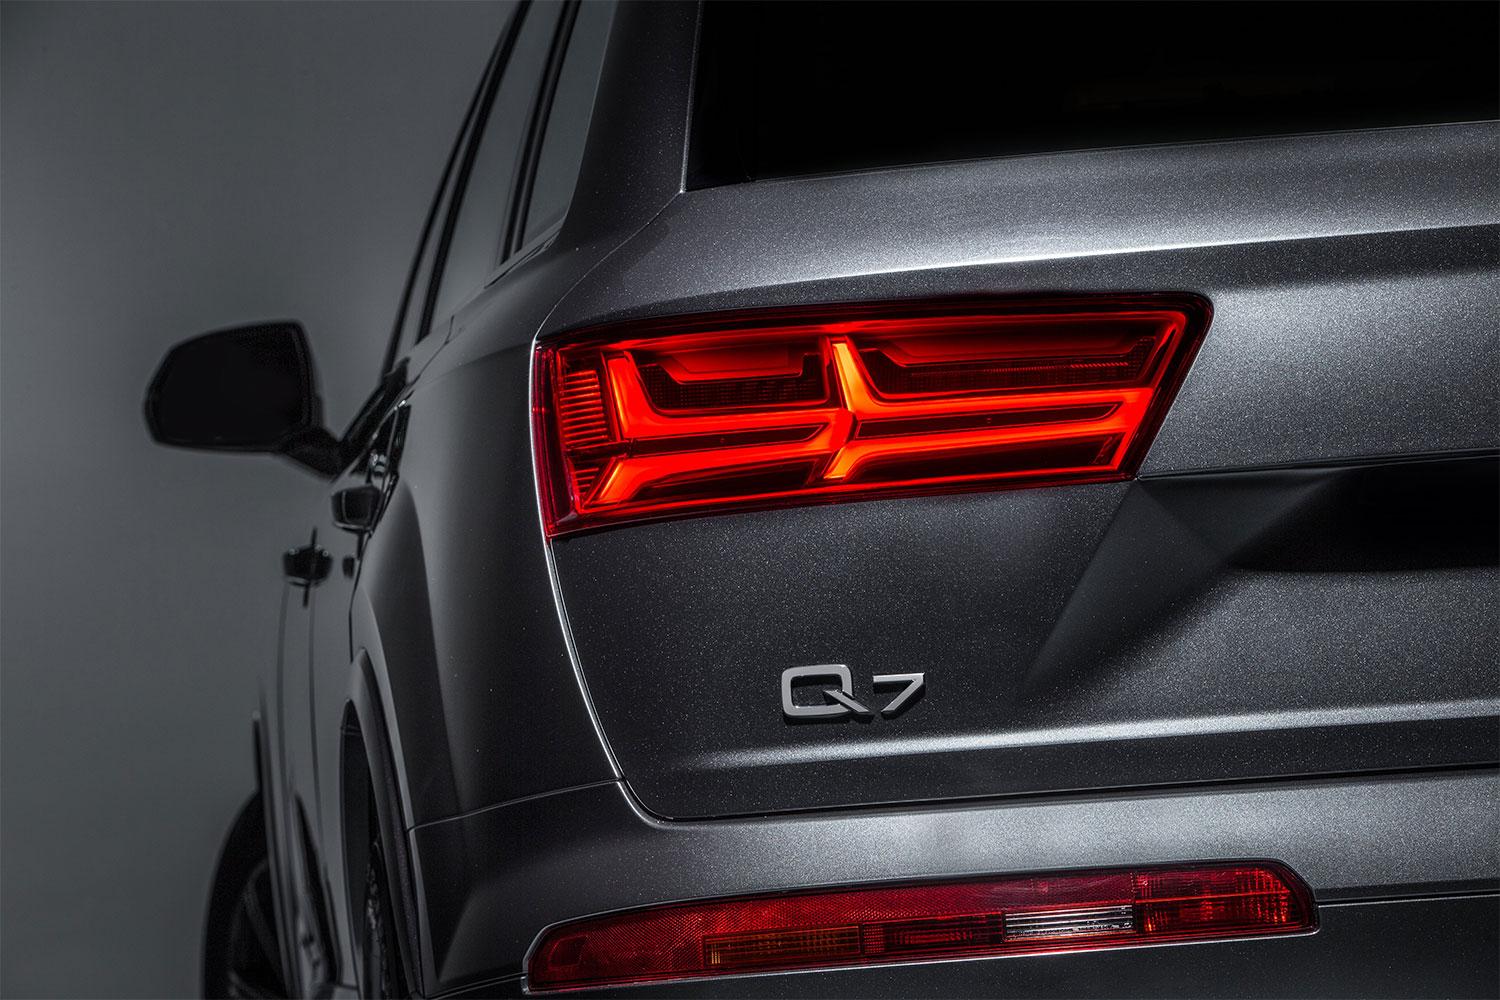 2016 Audi Q7 taillight